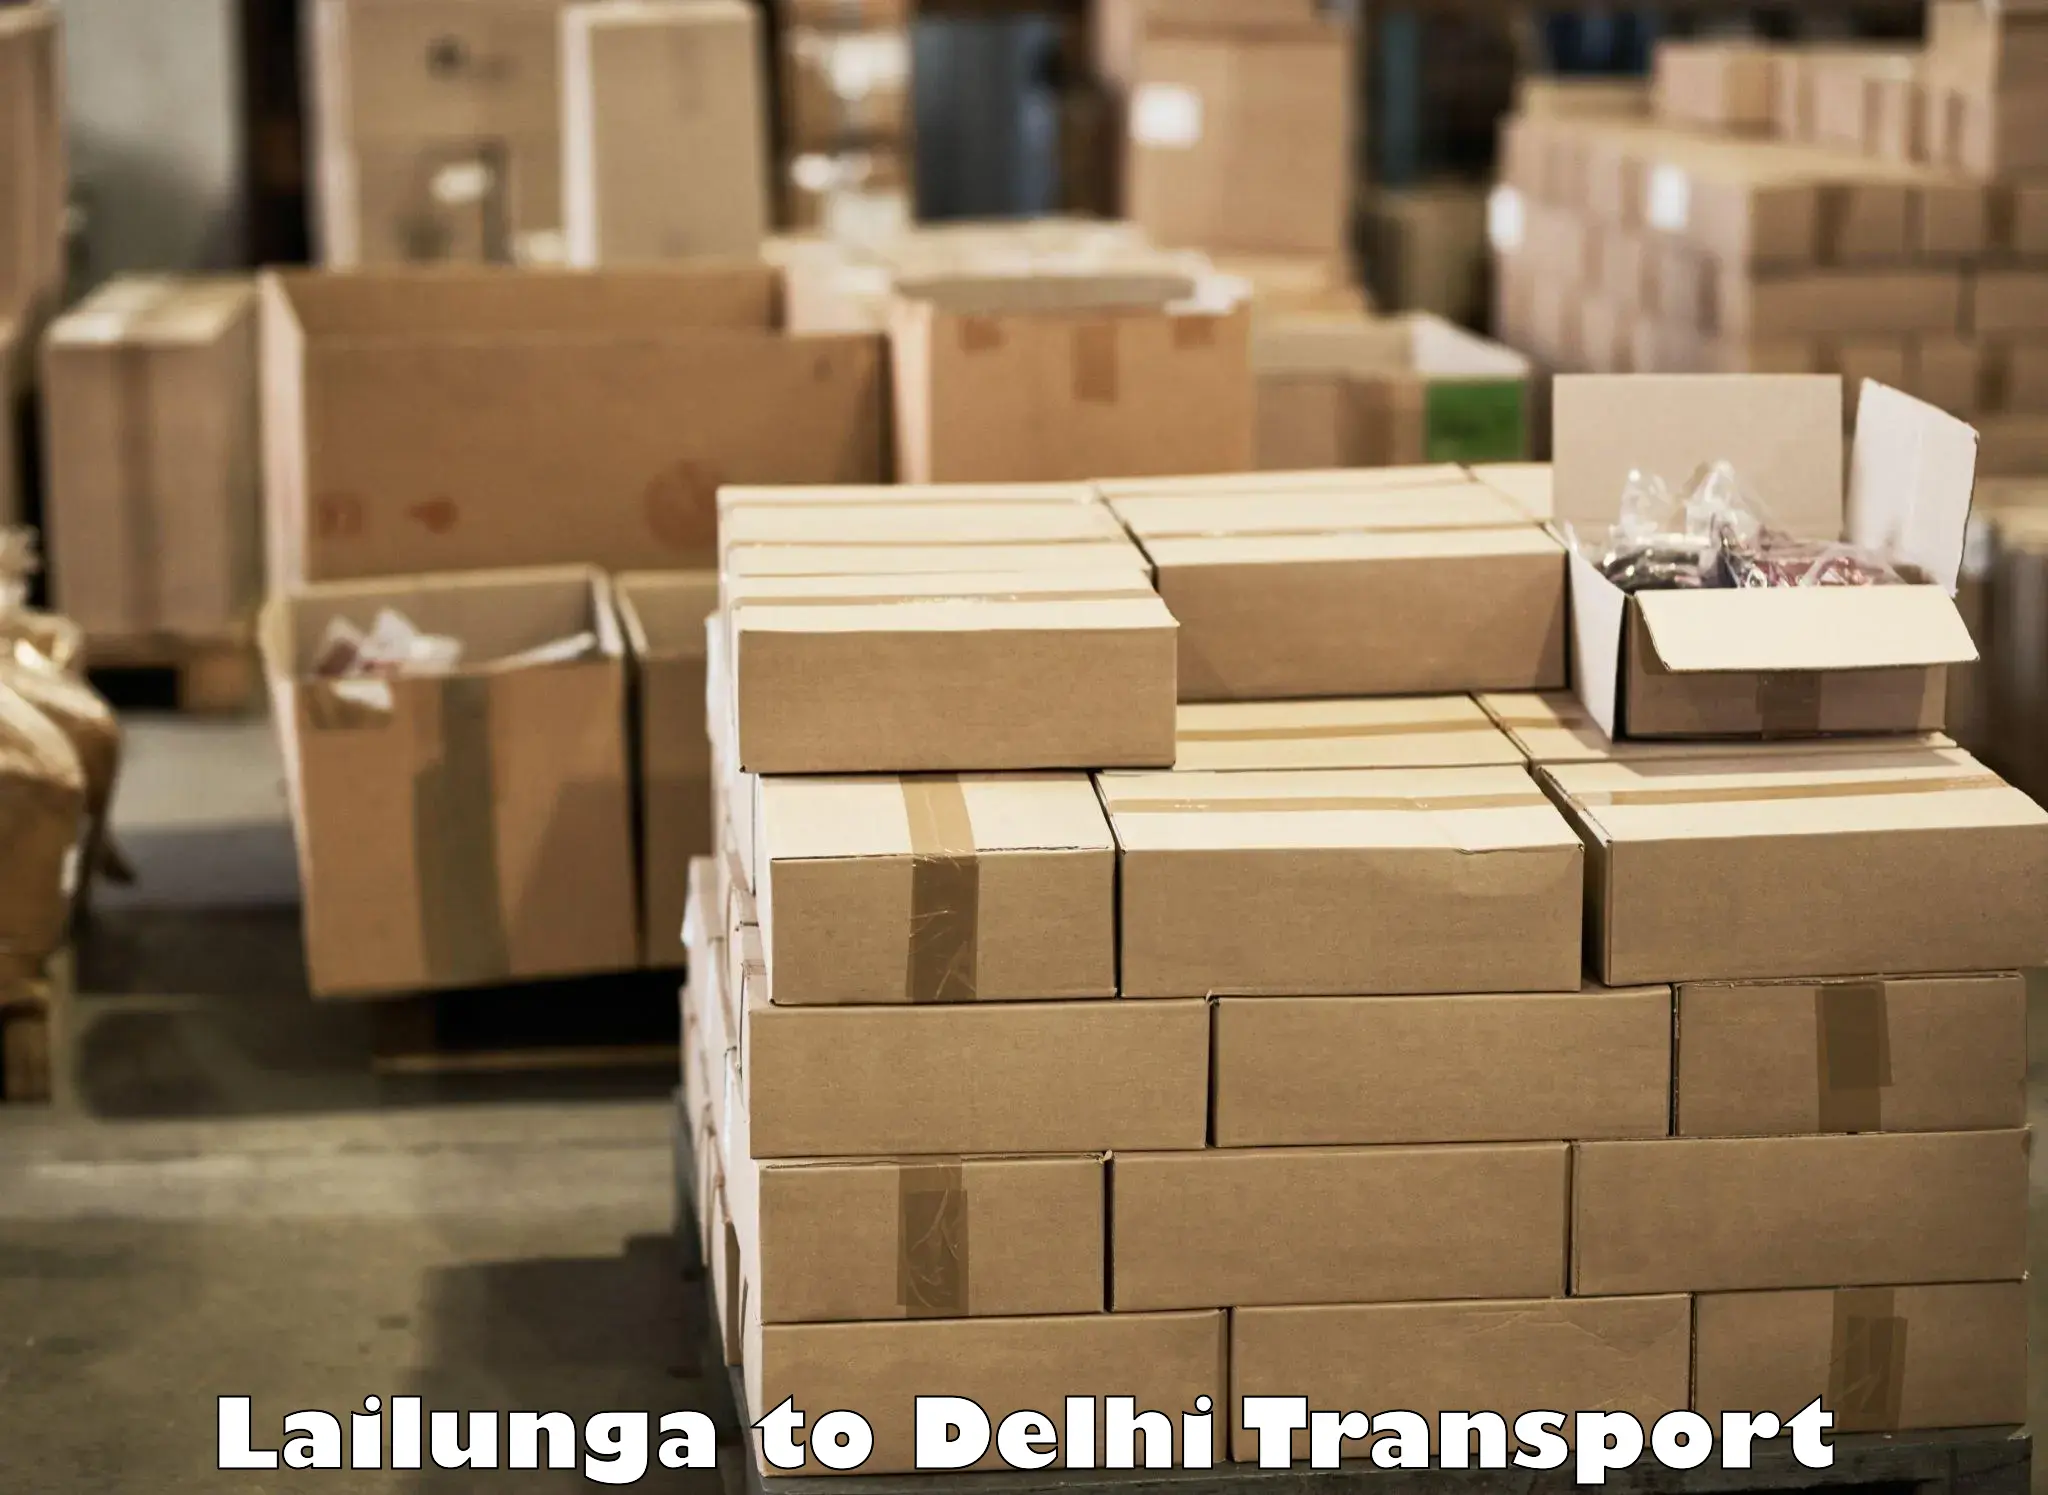 Cargo train transport services Lailunga to Jamia Millia Islamia New Delhi